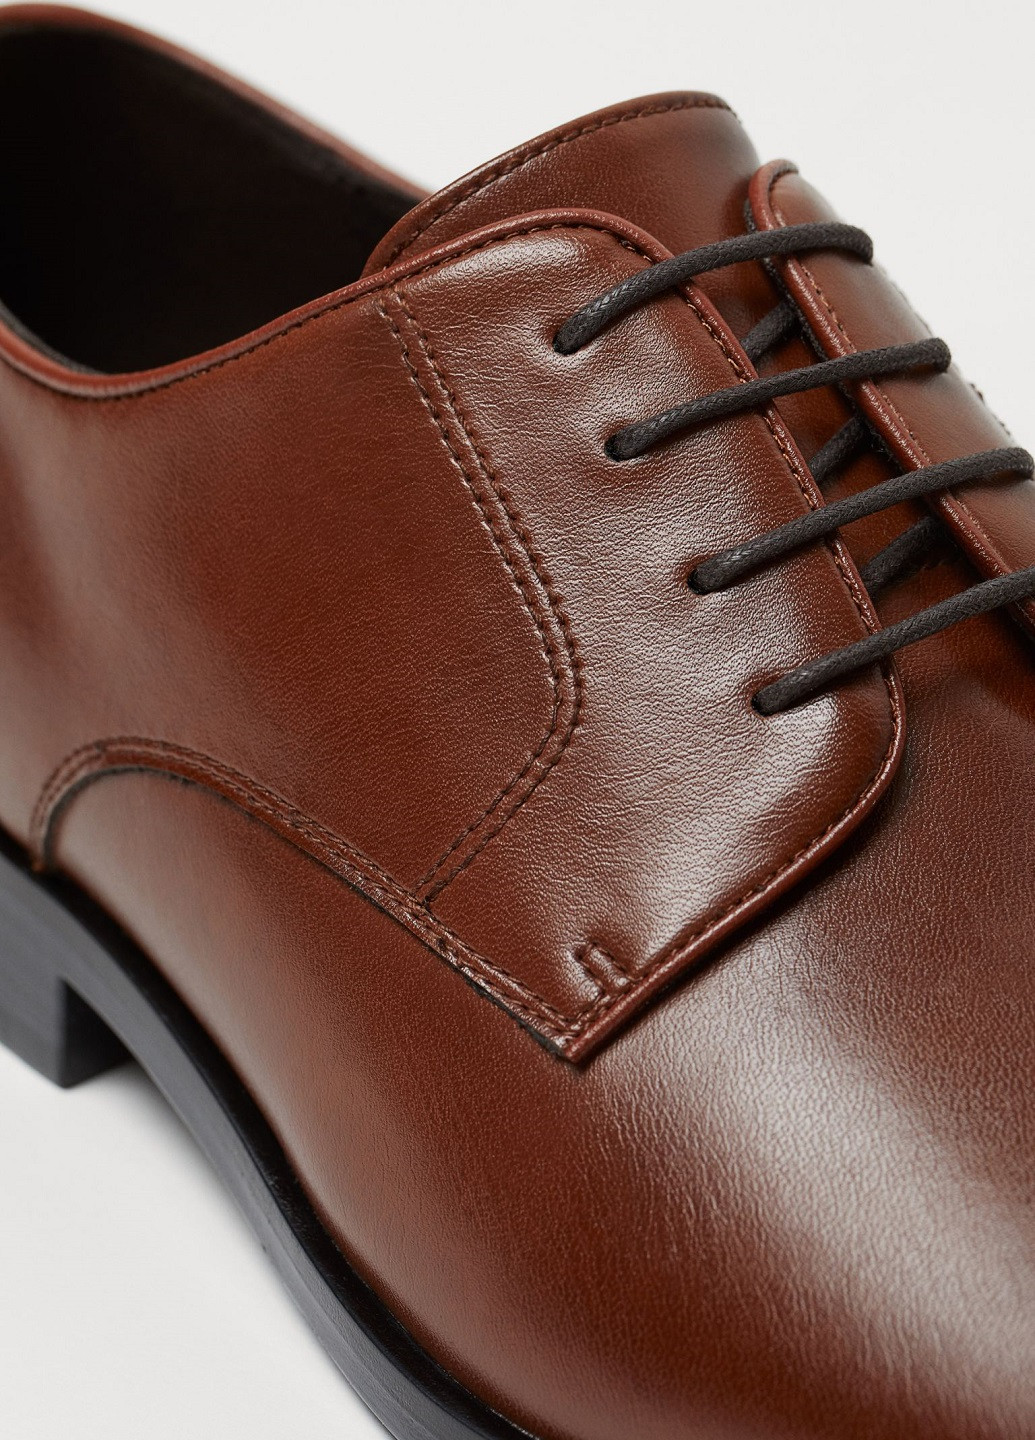 Темно-коричневые классические туфли H&M